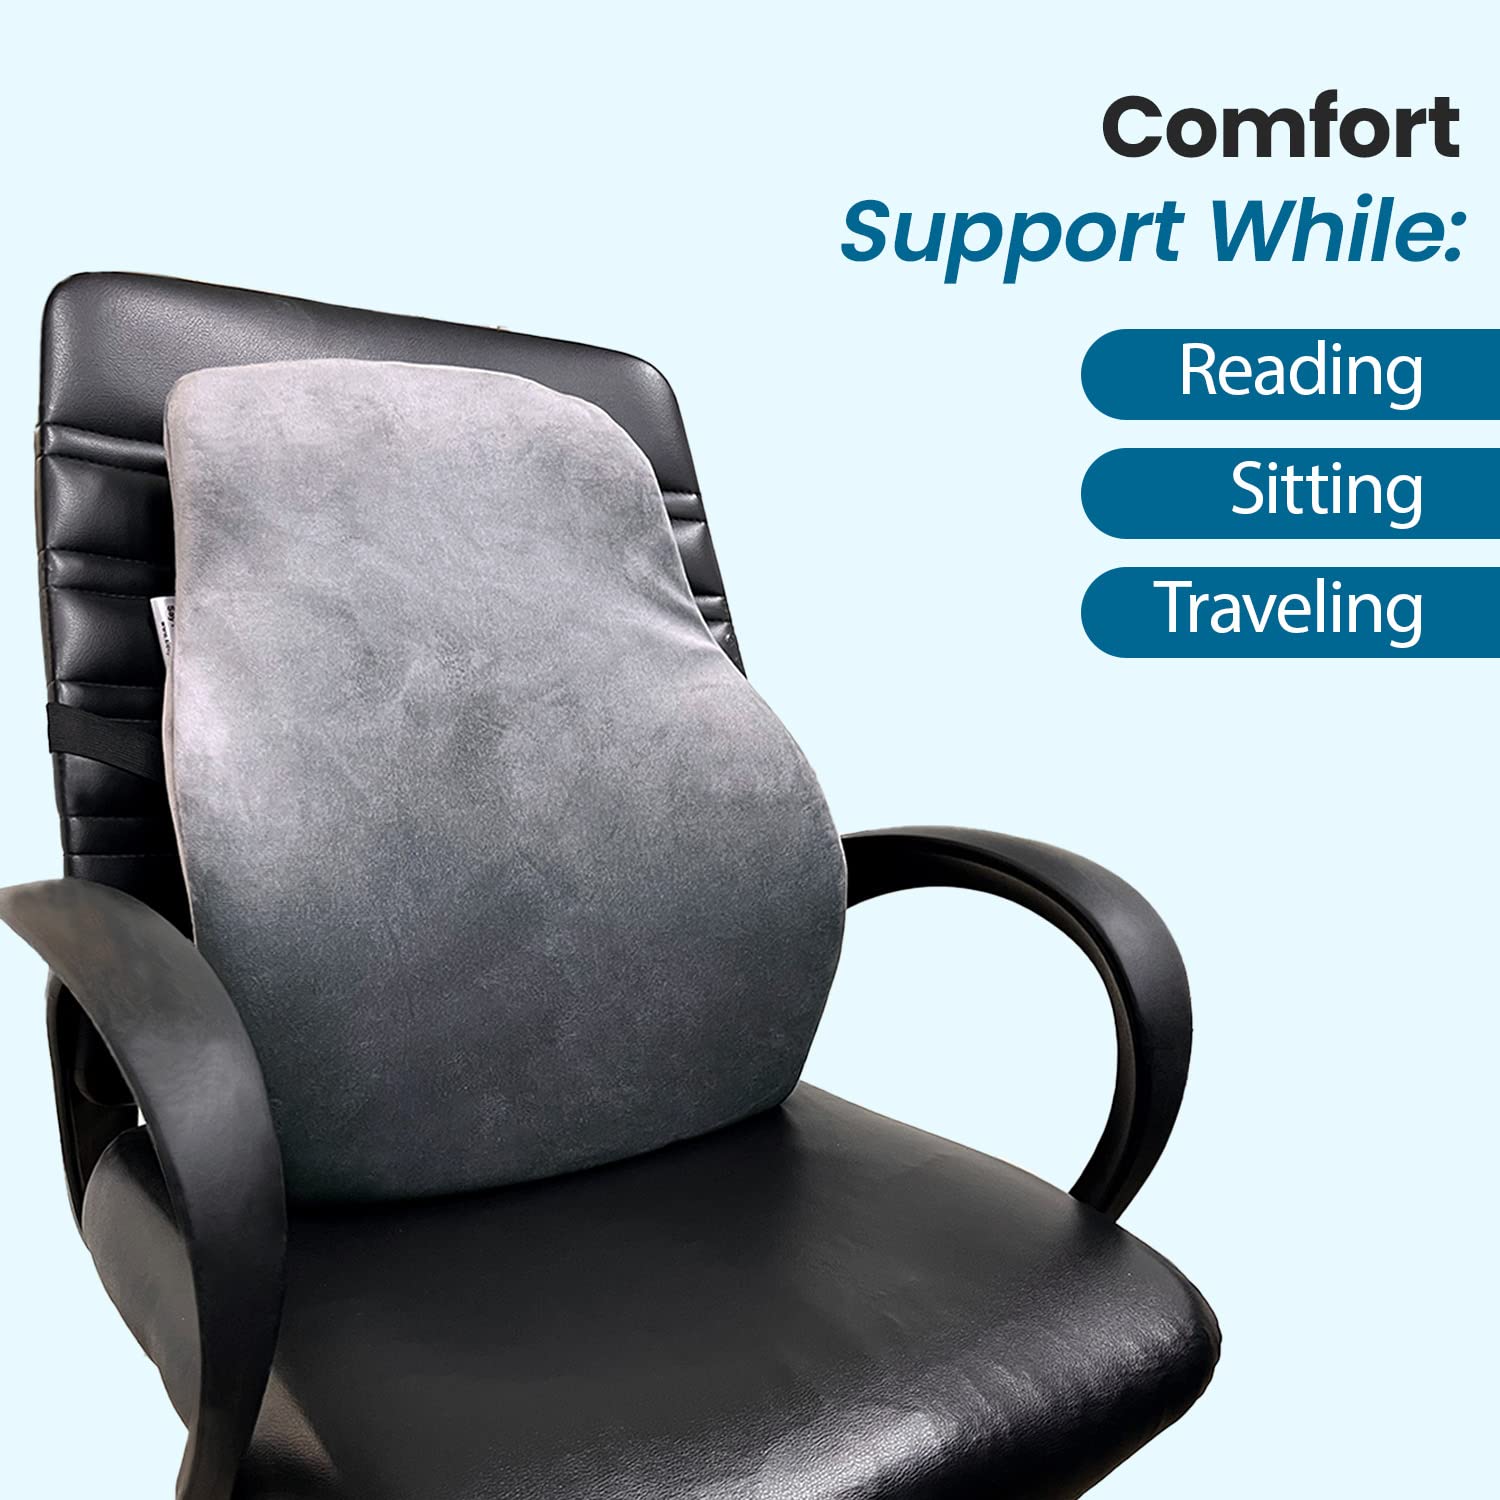 Lumbar Support Pillow Office Chair Back Support Pillow Chair